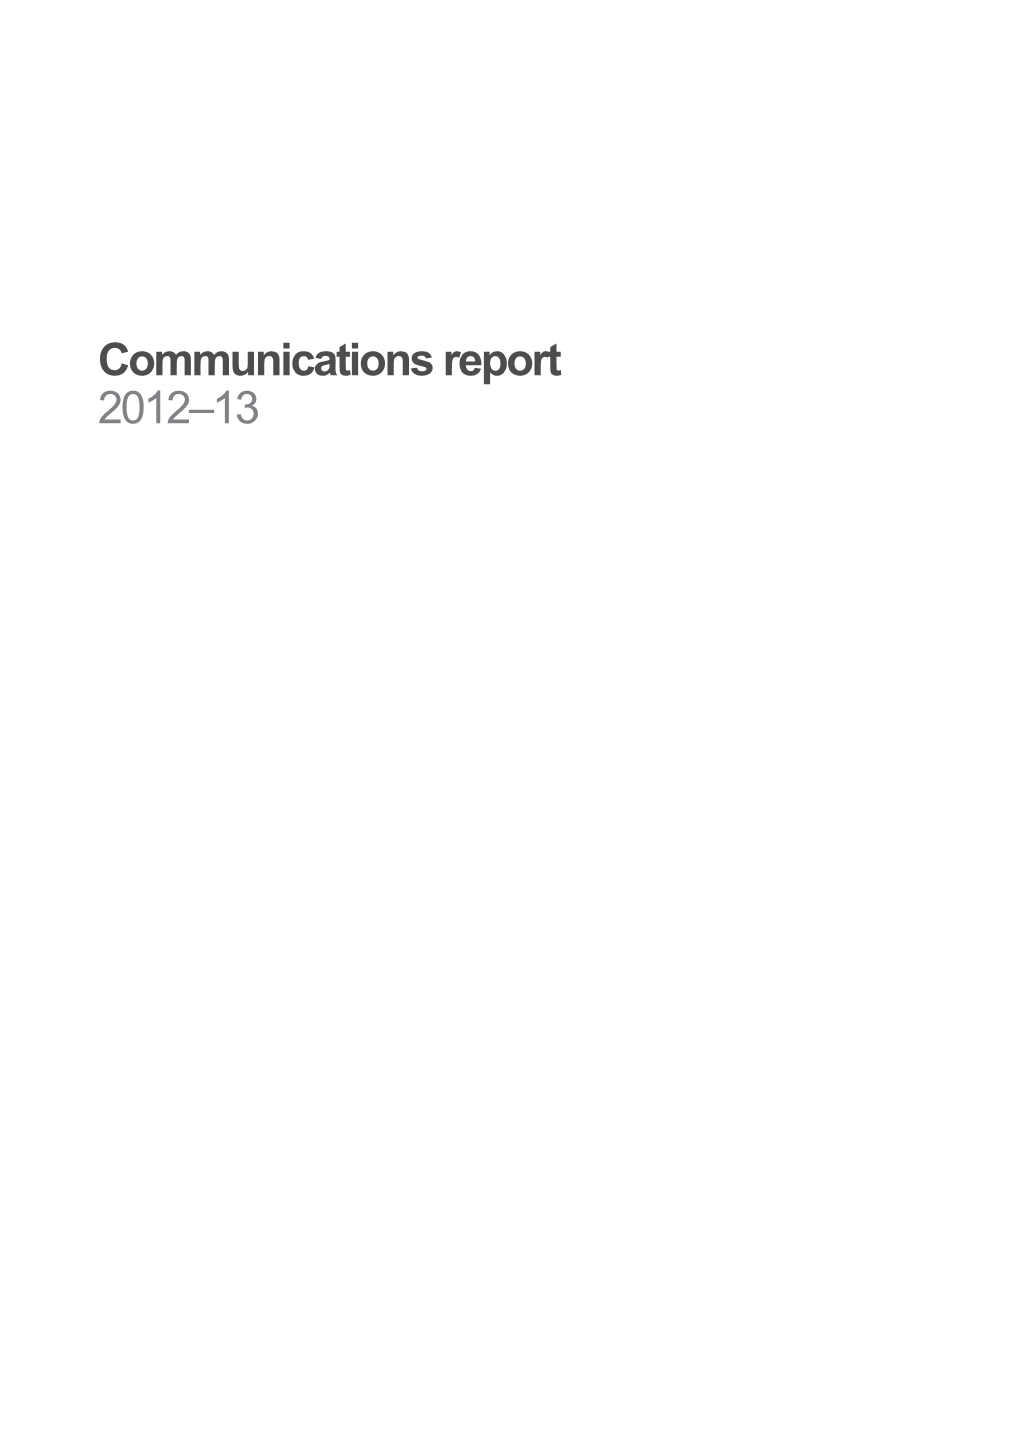 ACMA Communications Report 2012-13 WEB